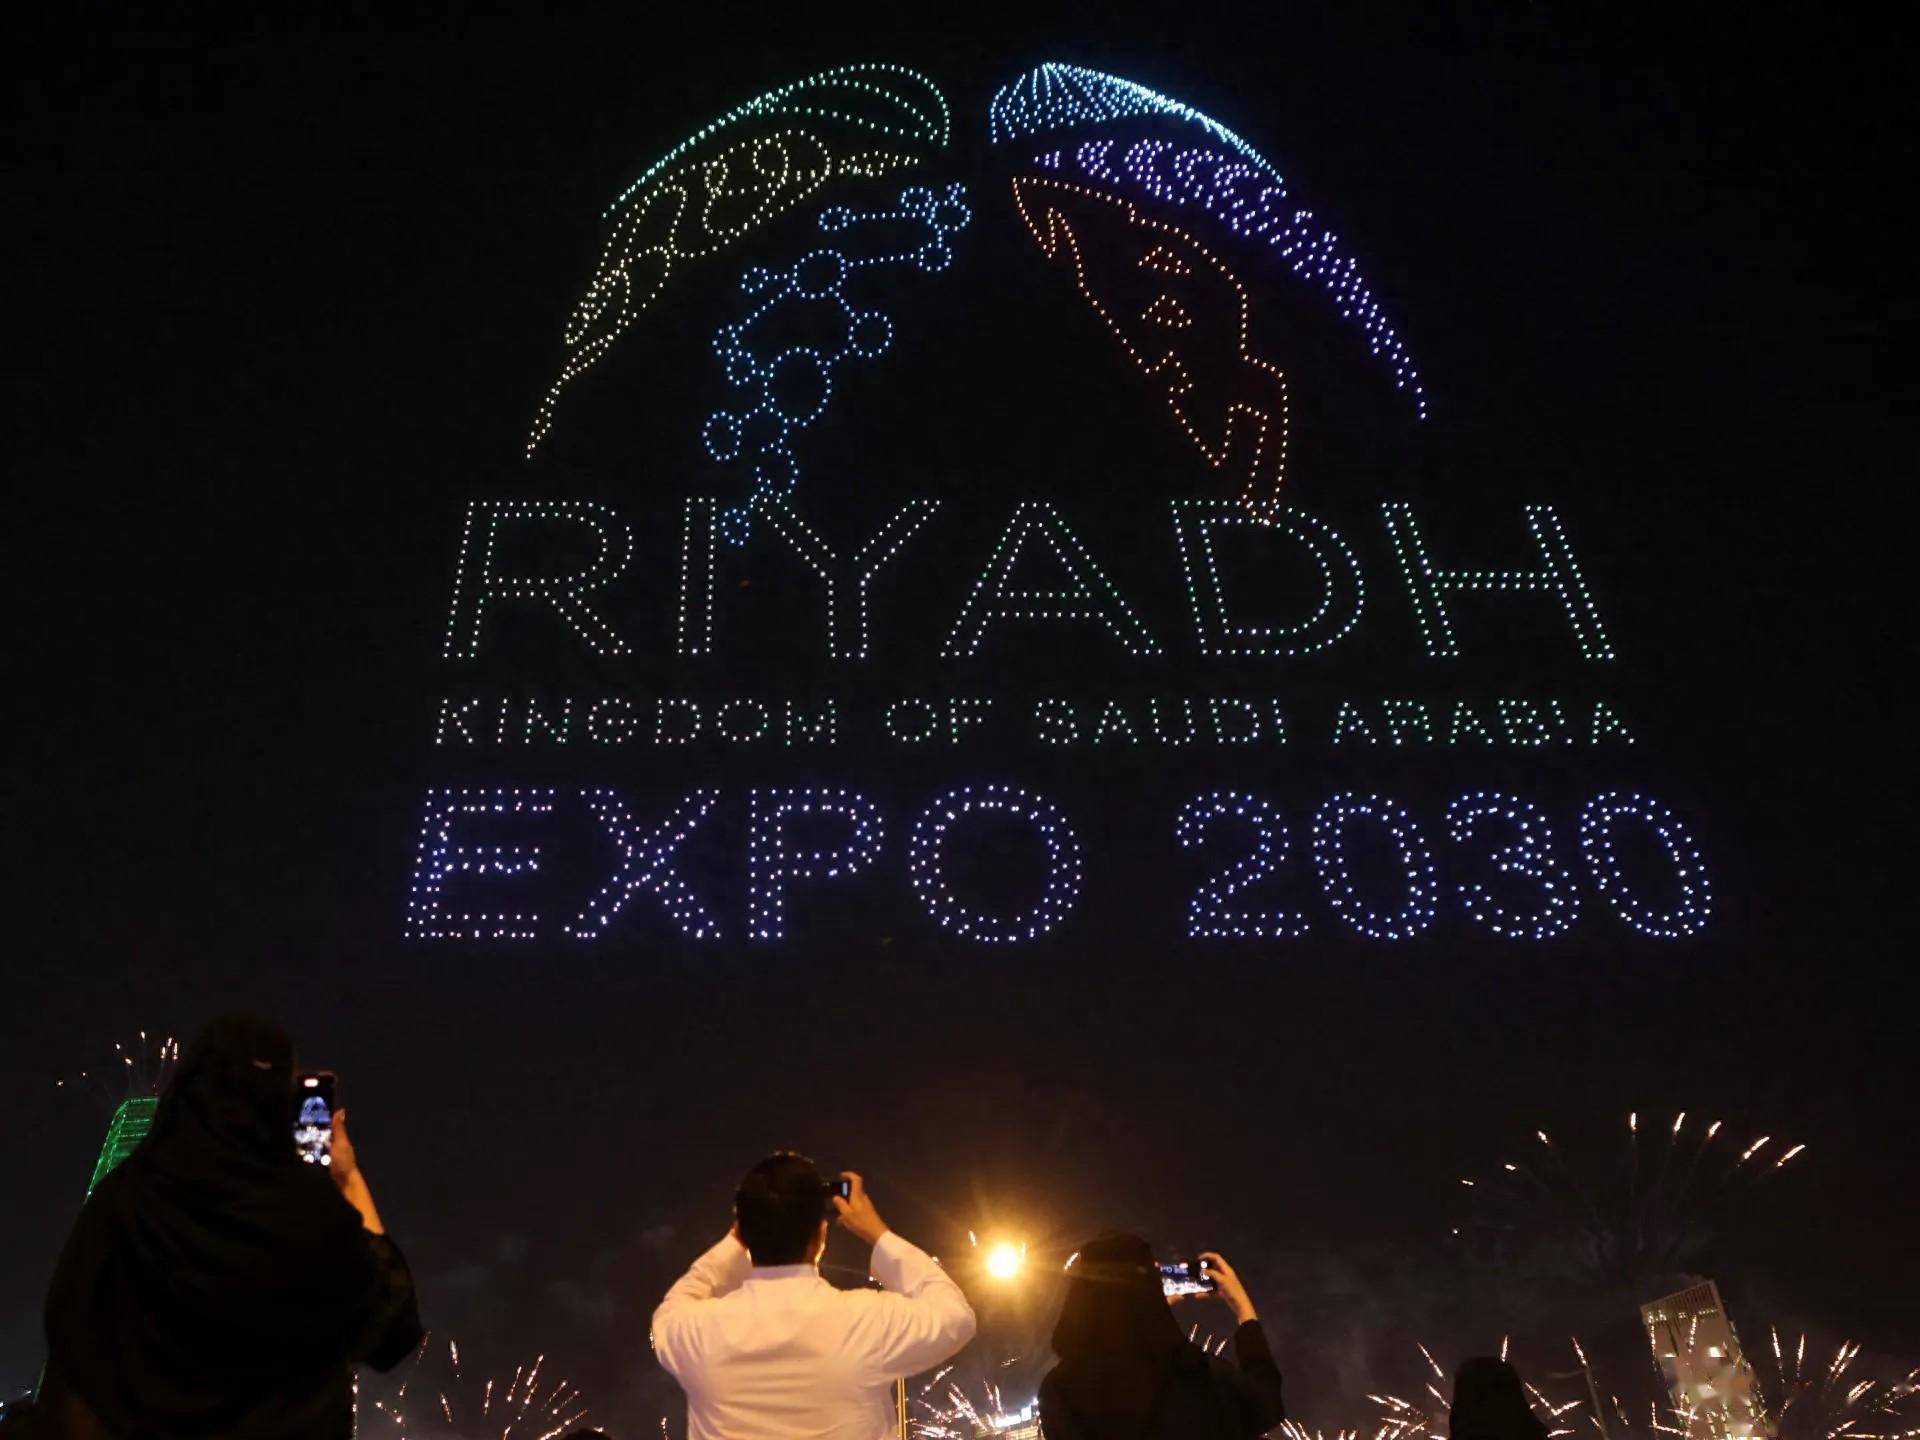 继2034年世界杯后,沙特又将主办2030世博会